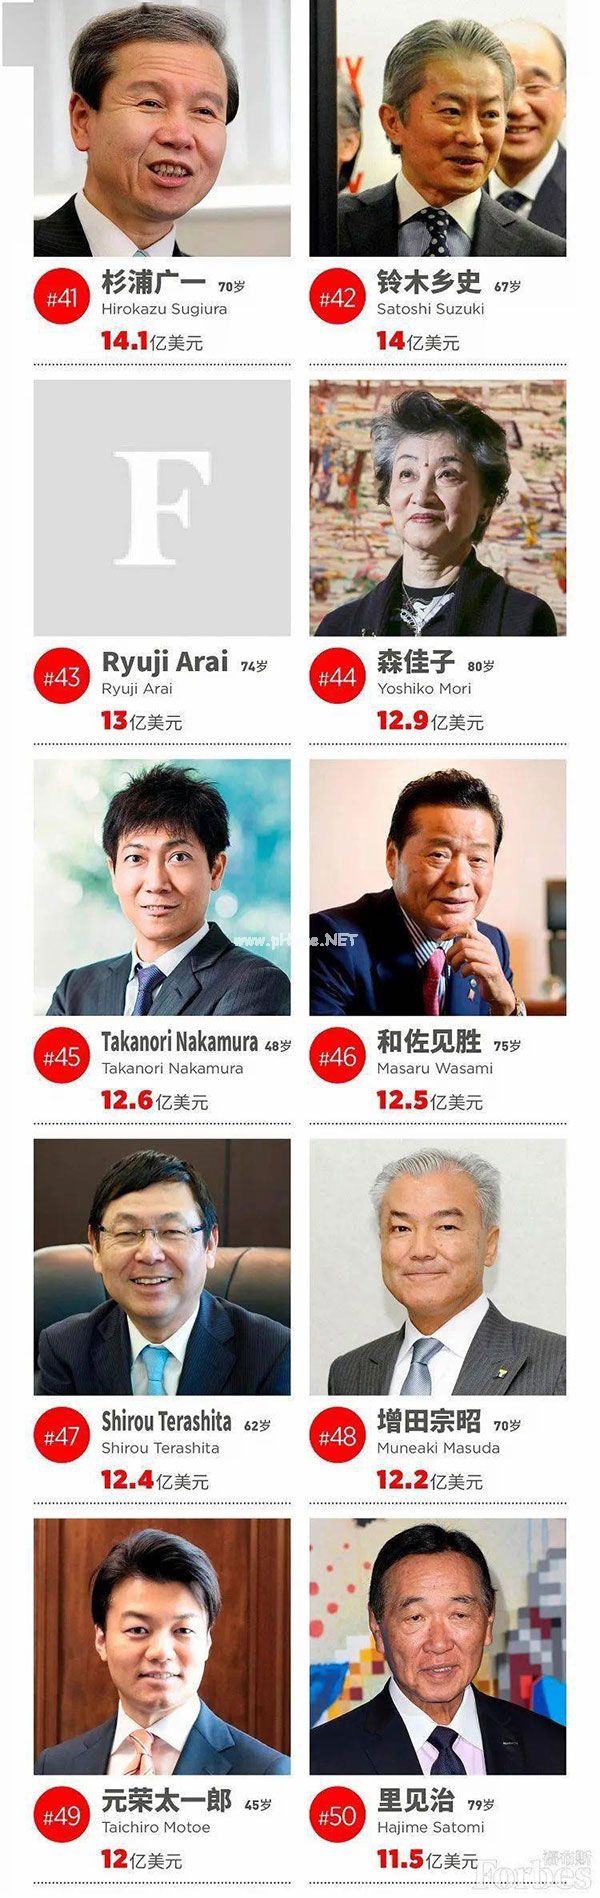 2021年福布斯日本富豪榜孙正义重夺榜首之位